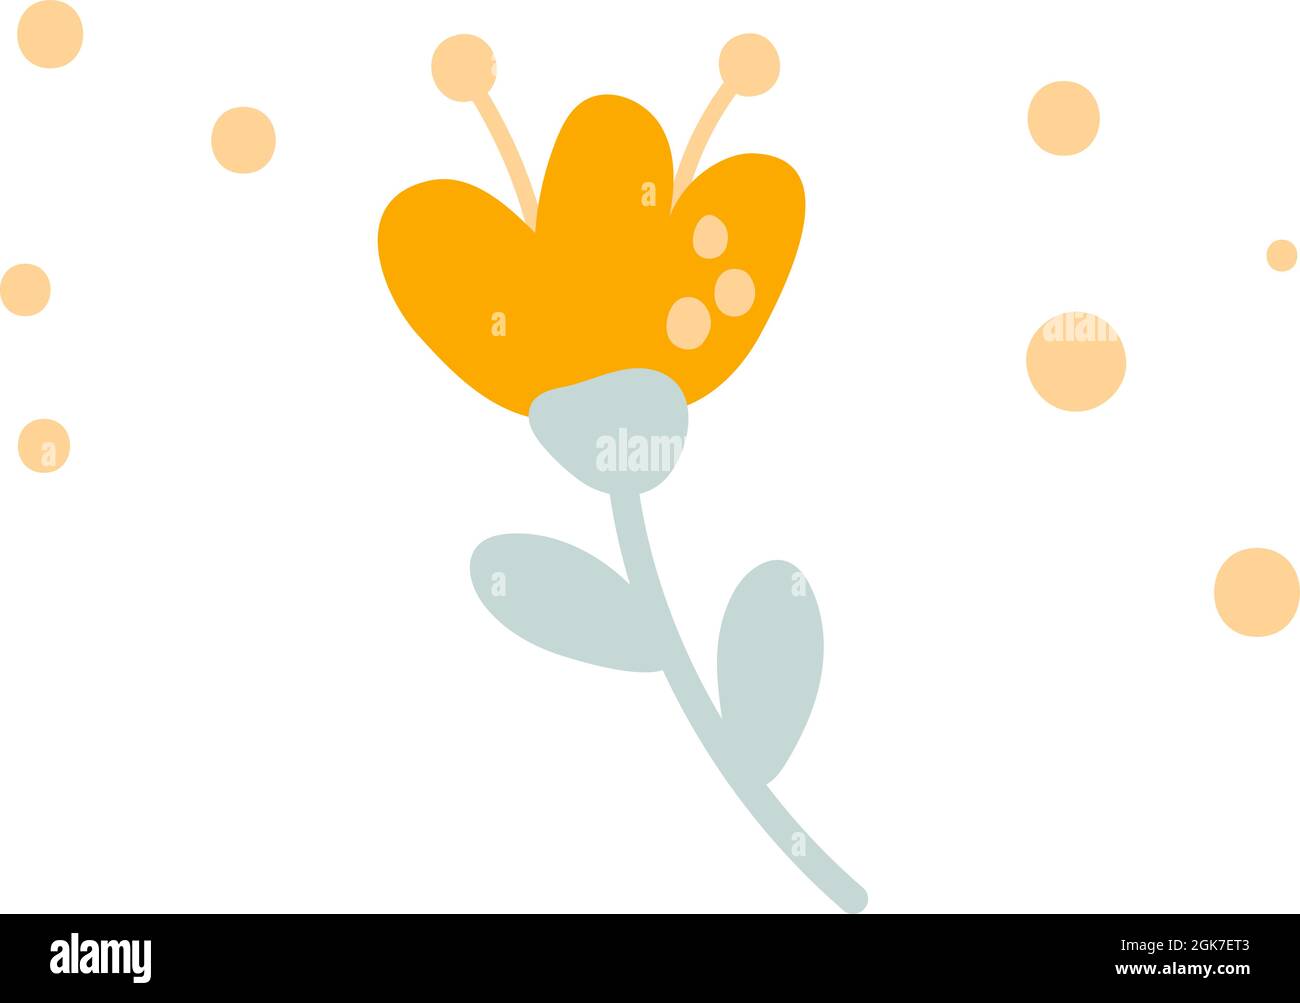 Fiore vettoriale stilizzato disegnato a mano con punti. Elemento d'arte dell'illustrazione della primavera scandinava. Immagine decorativa floreale estiva per il biglietto di auguri San Valentino Illustrazione Vettoriale